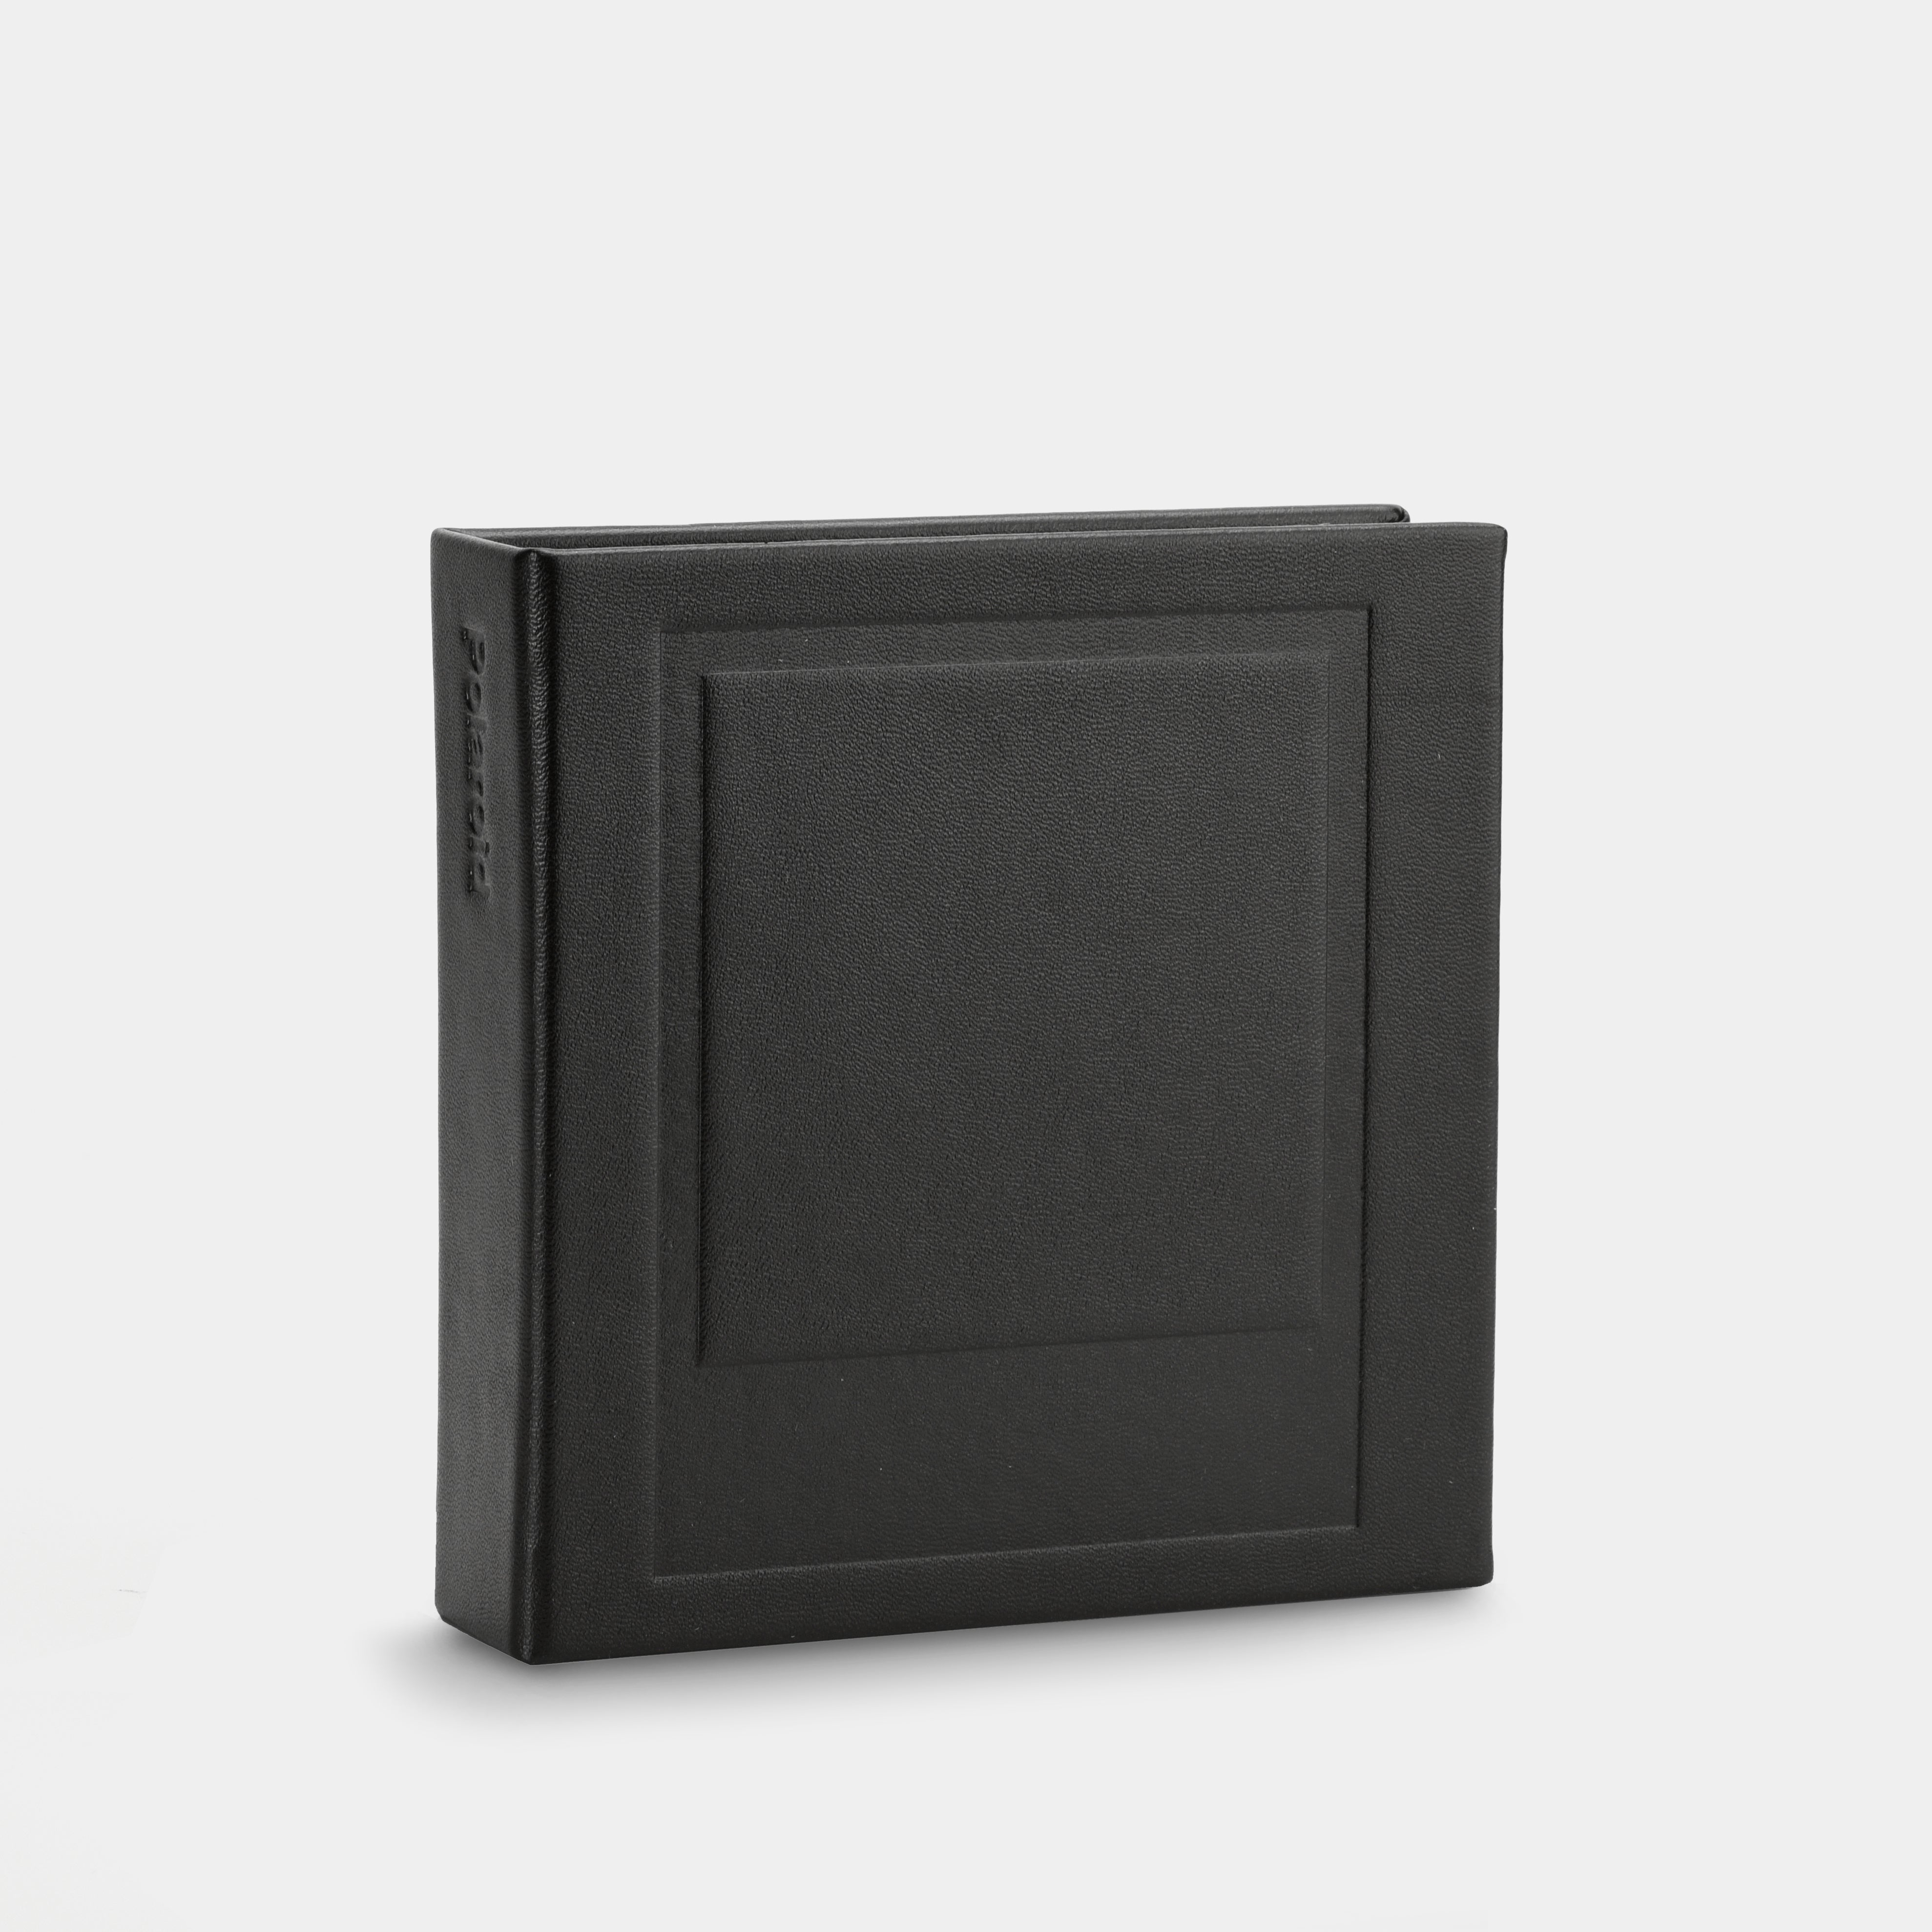 Polaroid Polaroid Photo Album Small In Black